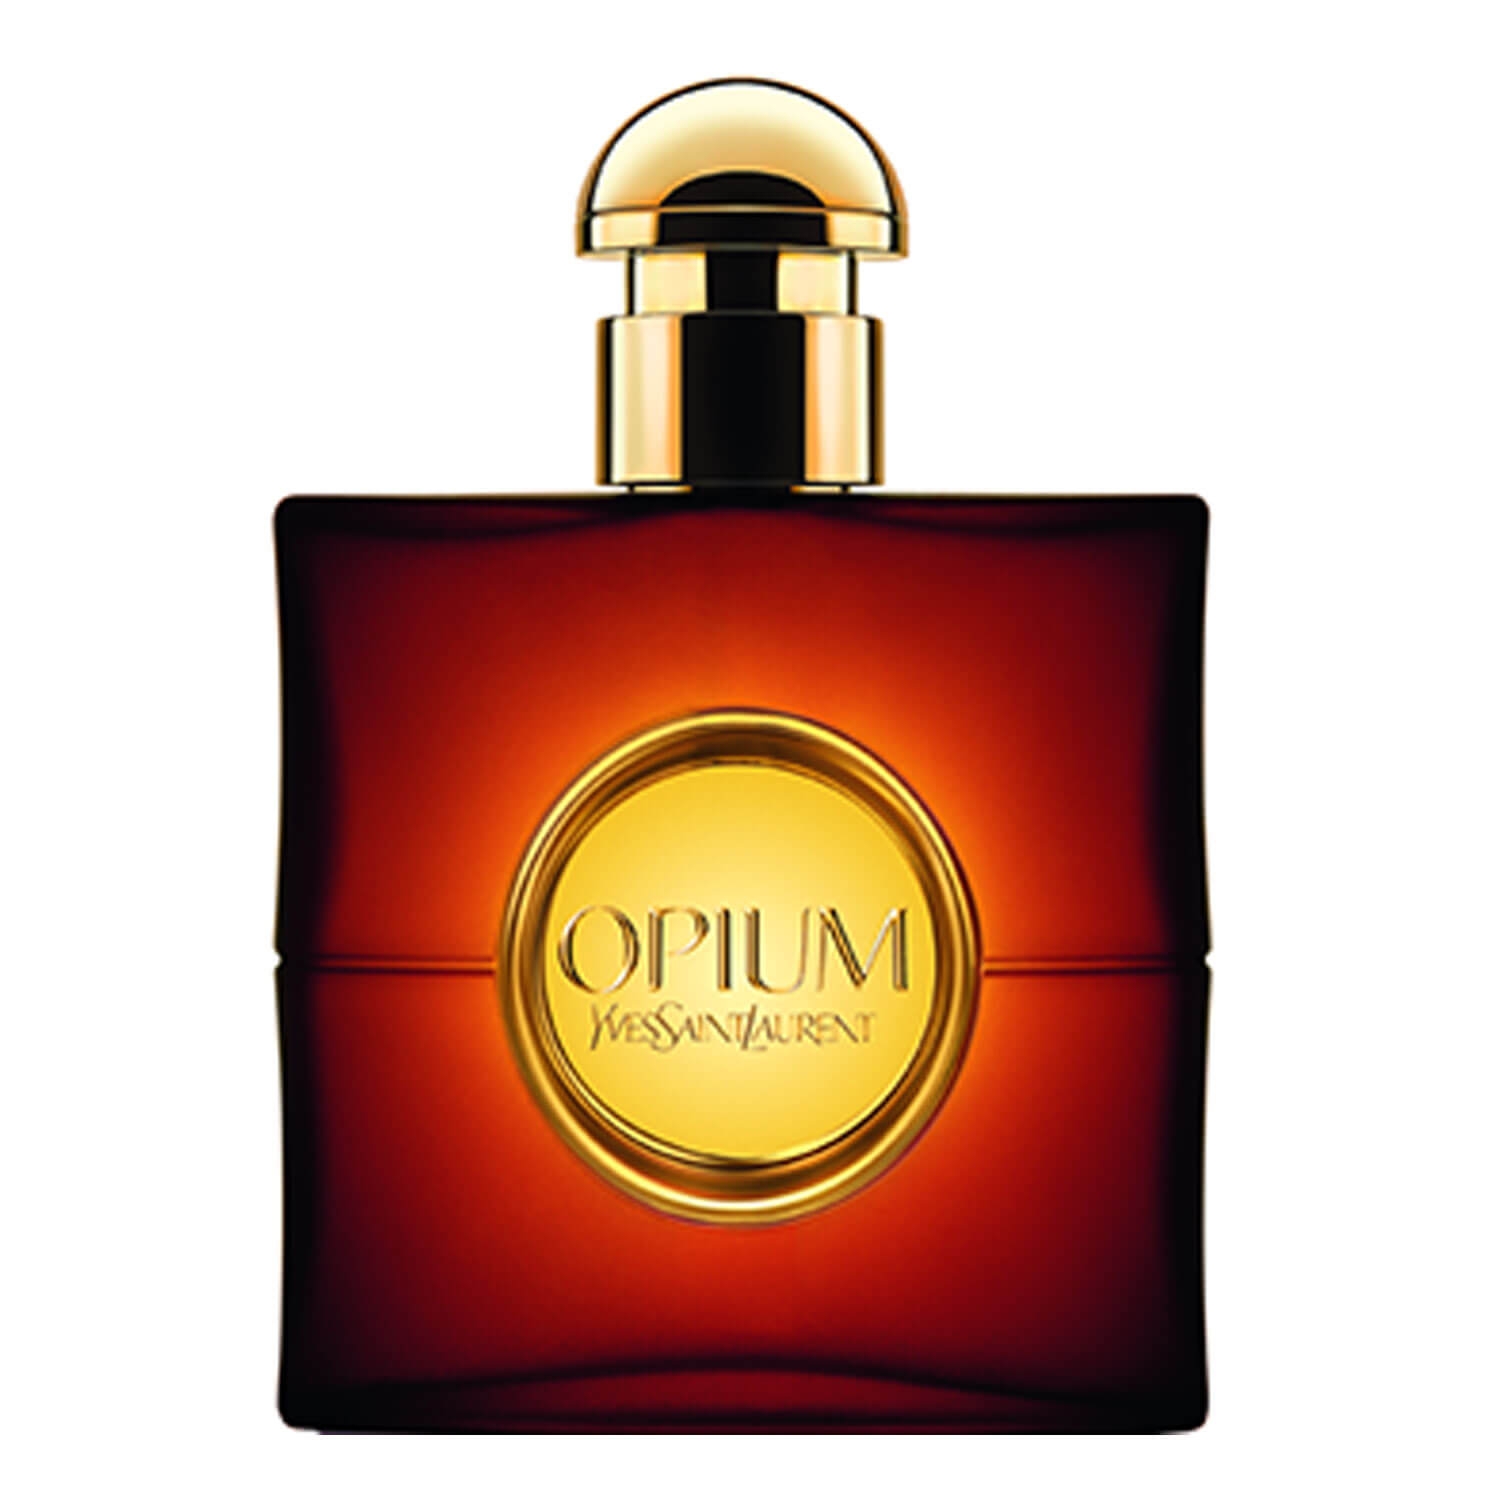 Product image from Opium - Eau de Toilette